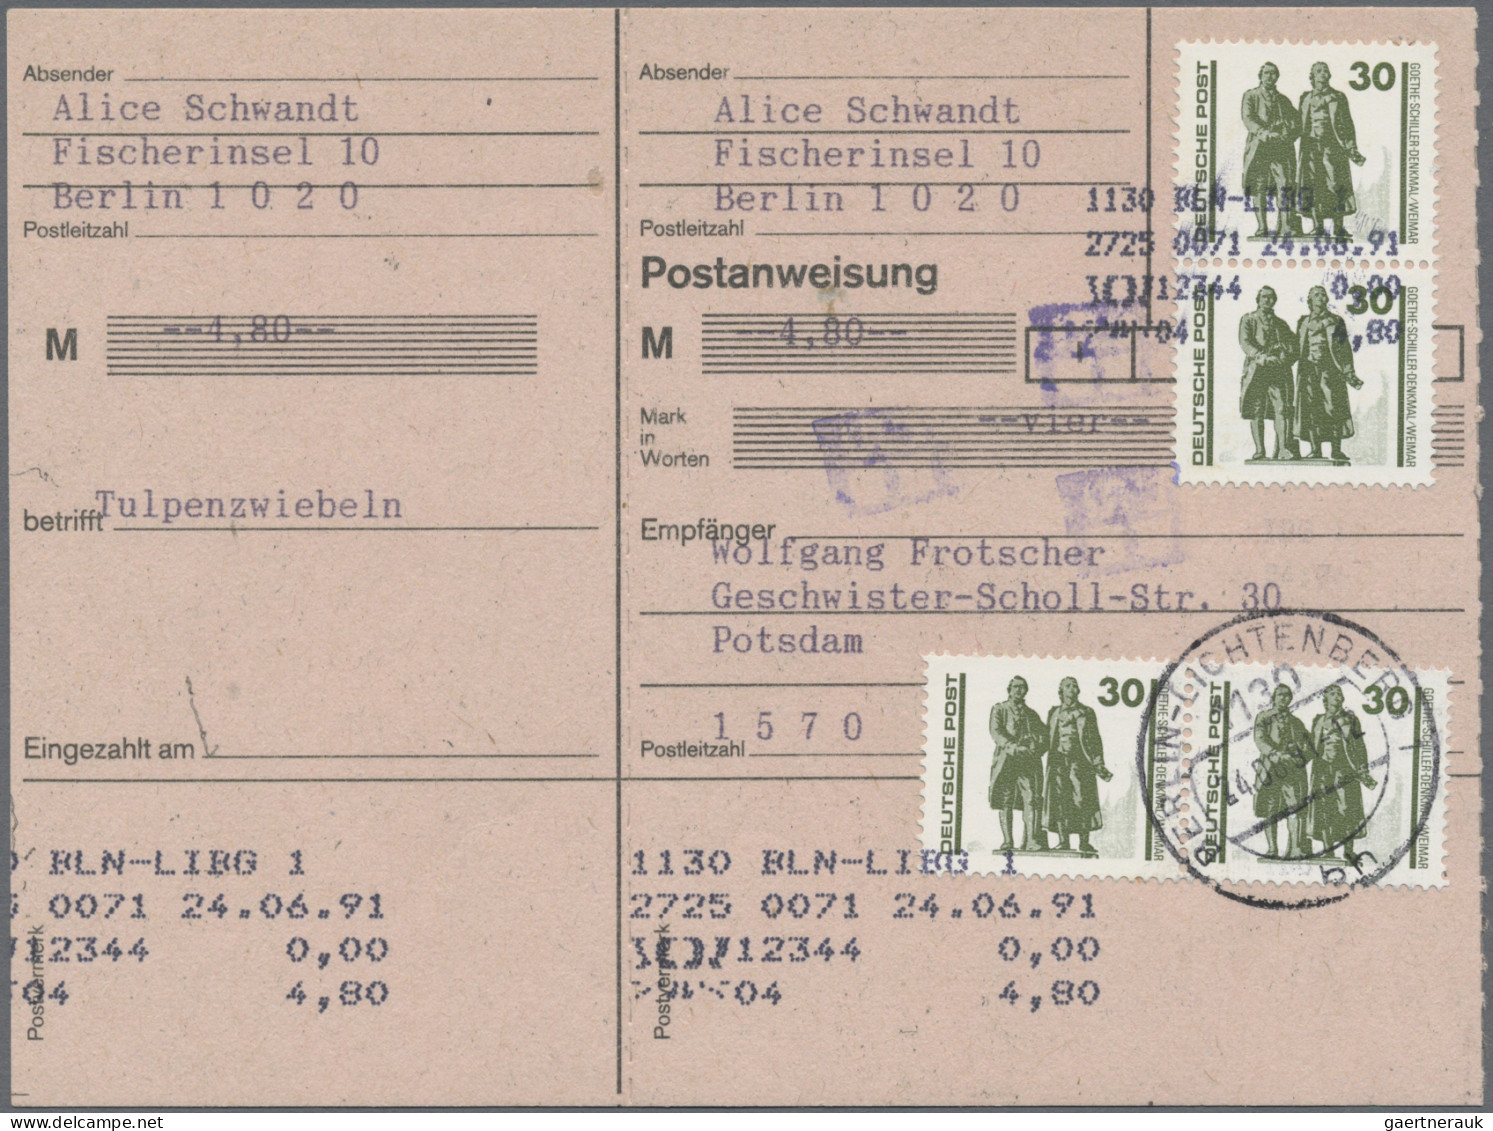 DDR: 1949/1990, Partie von ca. 121 Belegen, neben einfachem Material sind auch e